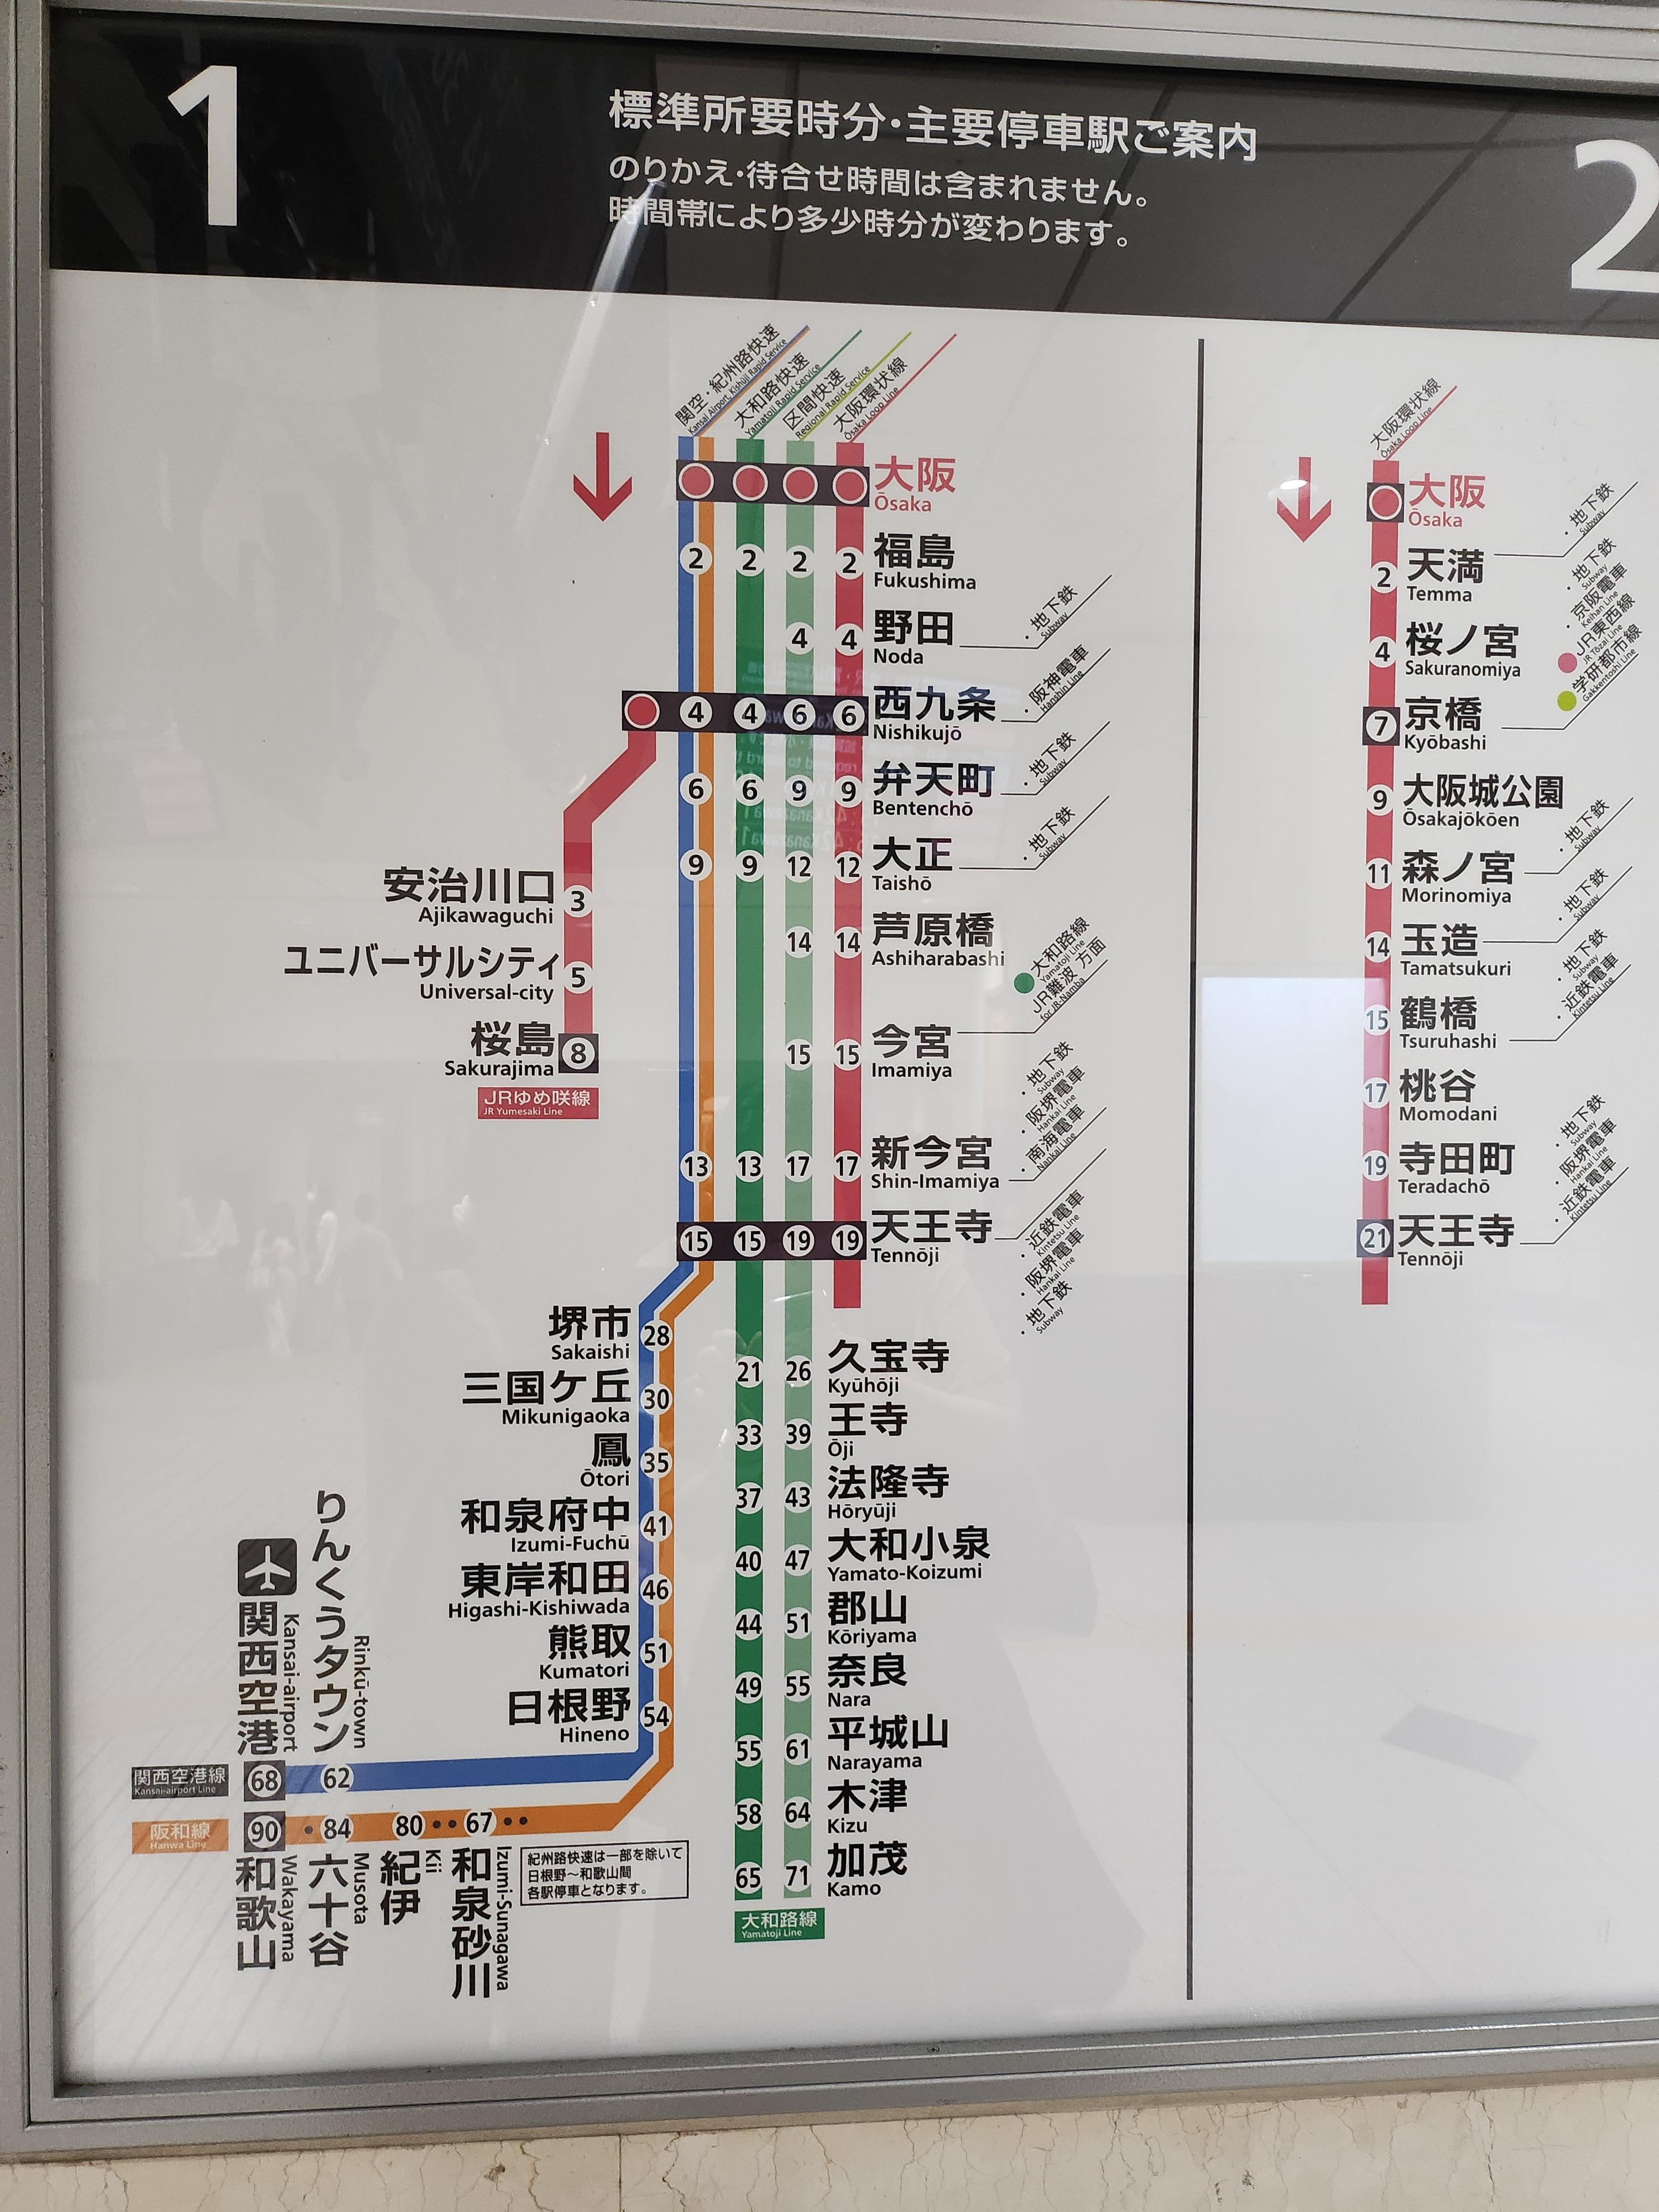 오사카 전철 노선도